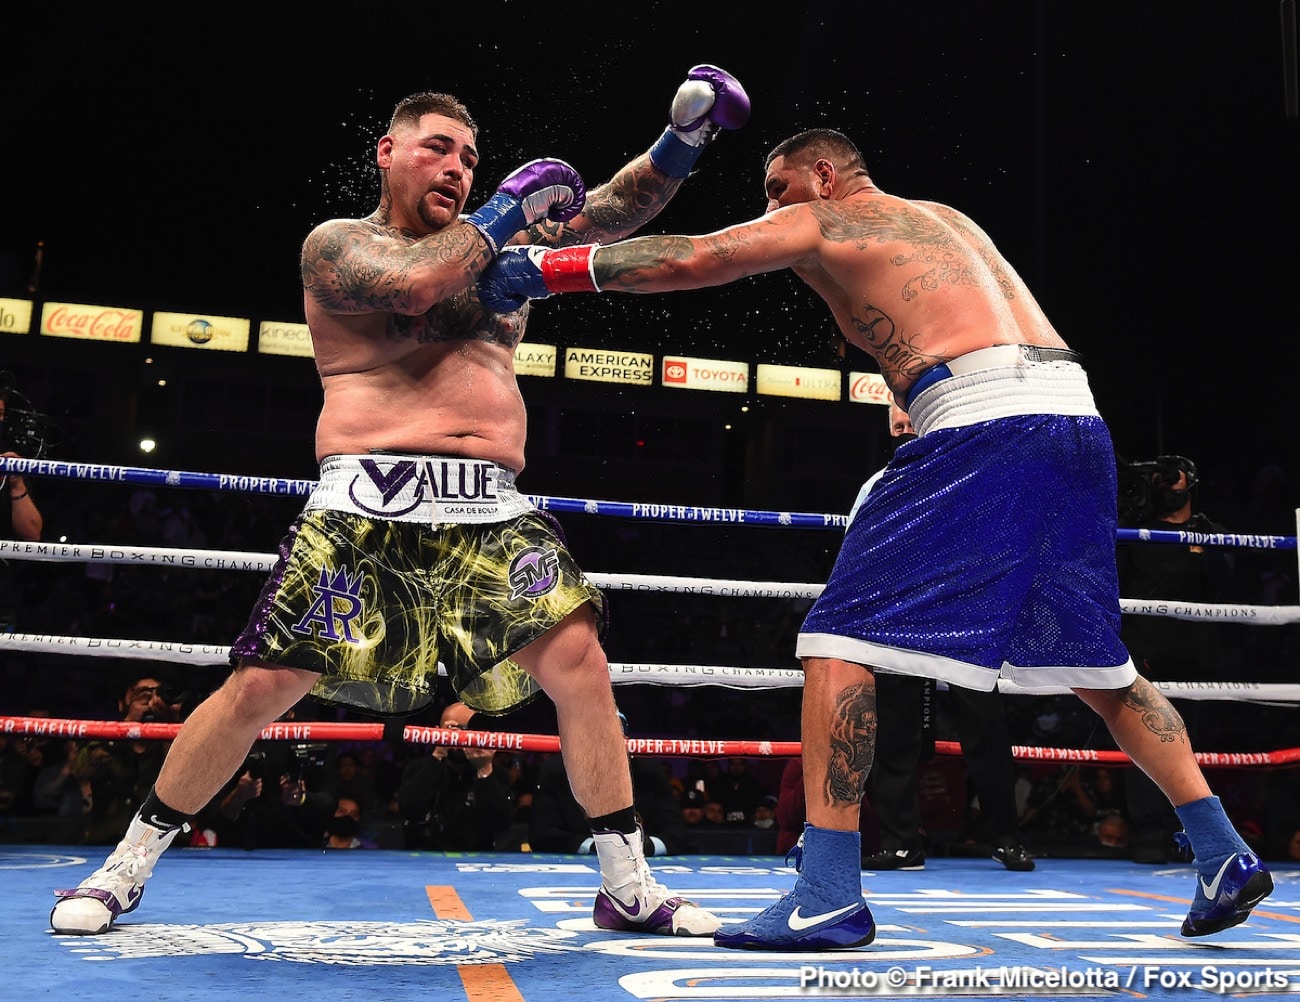 Andy Ruiz Jr boxing image / photo